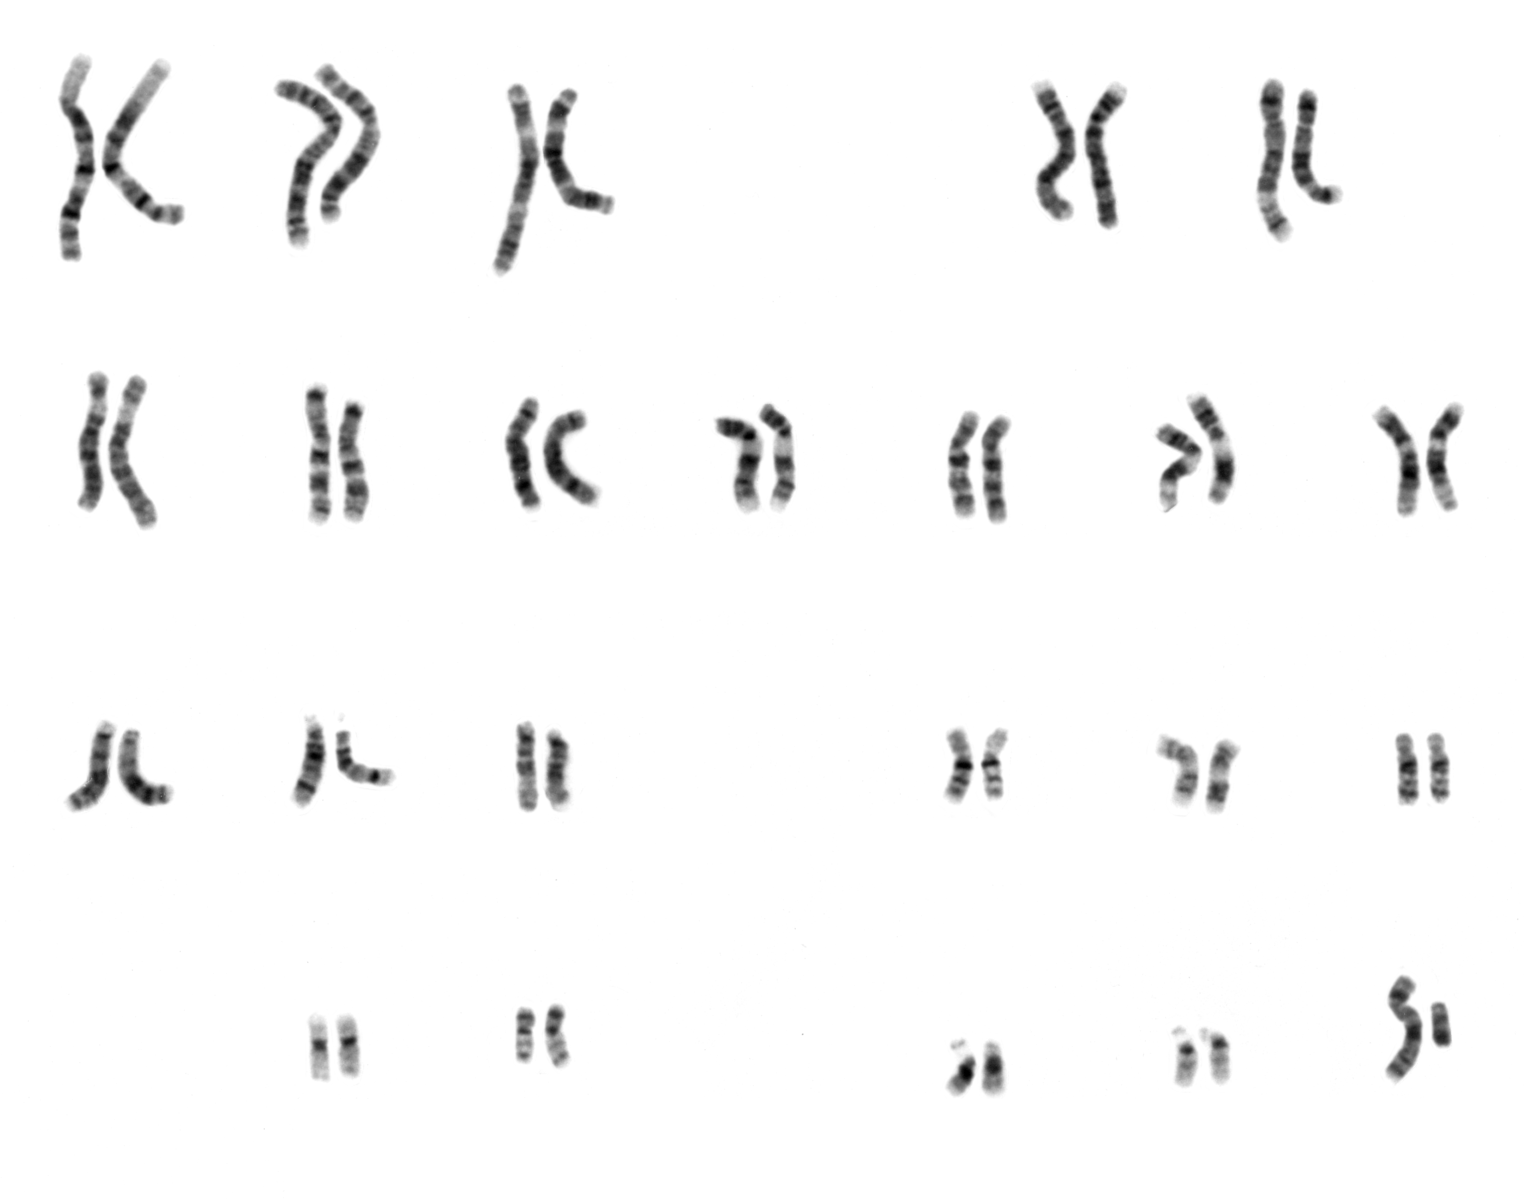 Human male karyotype